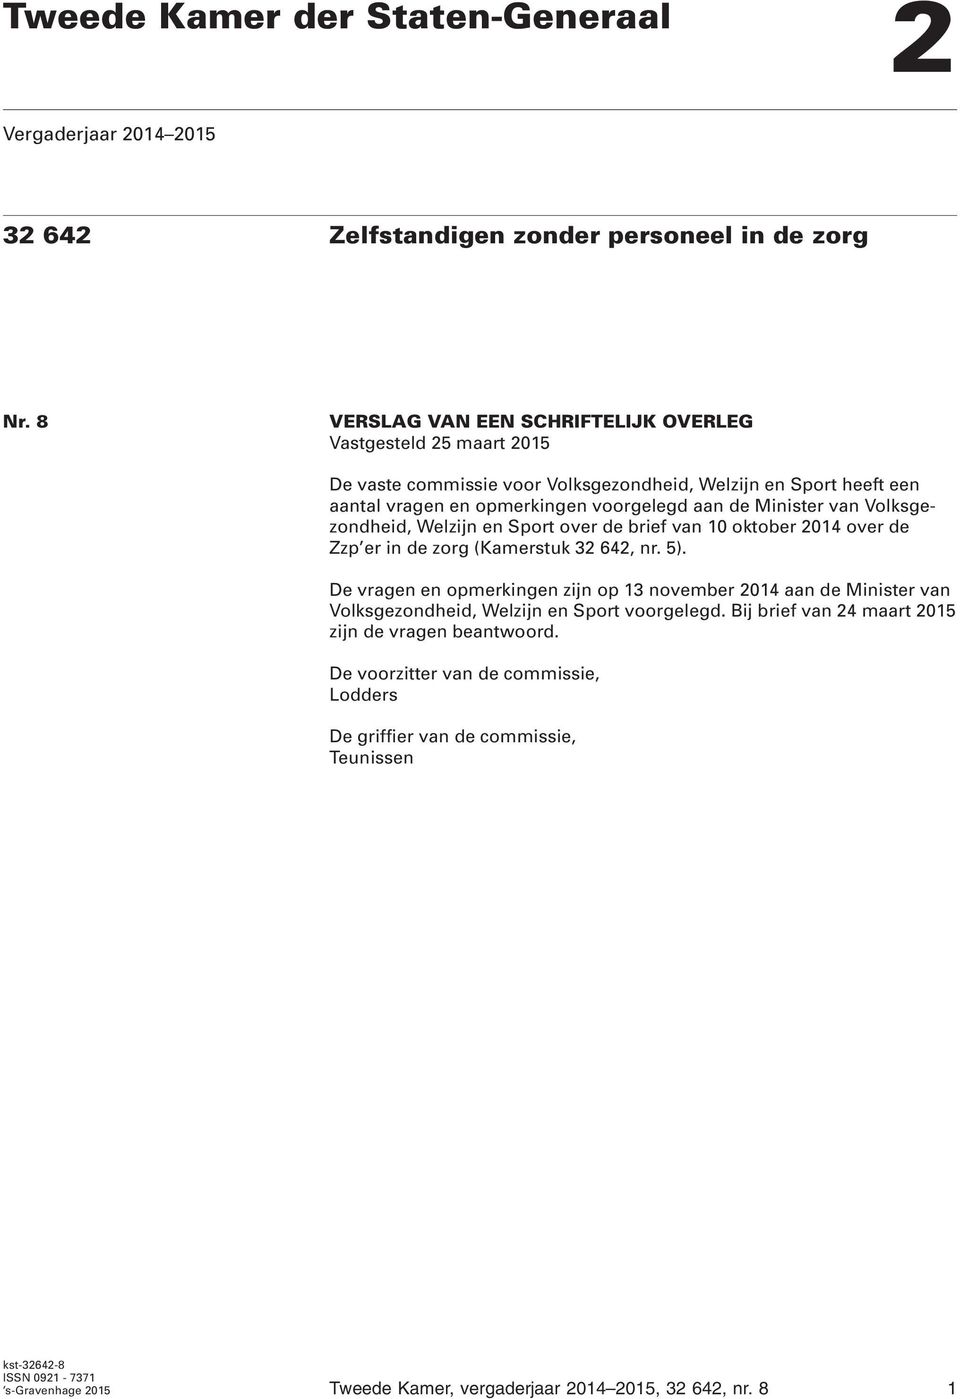 Volksgezondheid, Welzijn en Sport over de brief van 10 oktober 2014 over de Zzp er in de zorg (Kamerstuk 32 642, nr. 5).